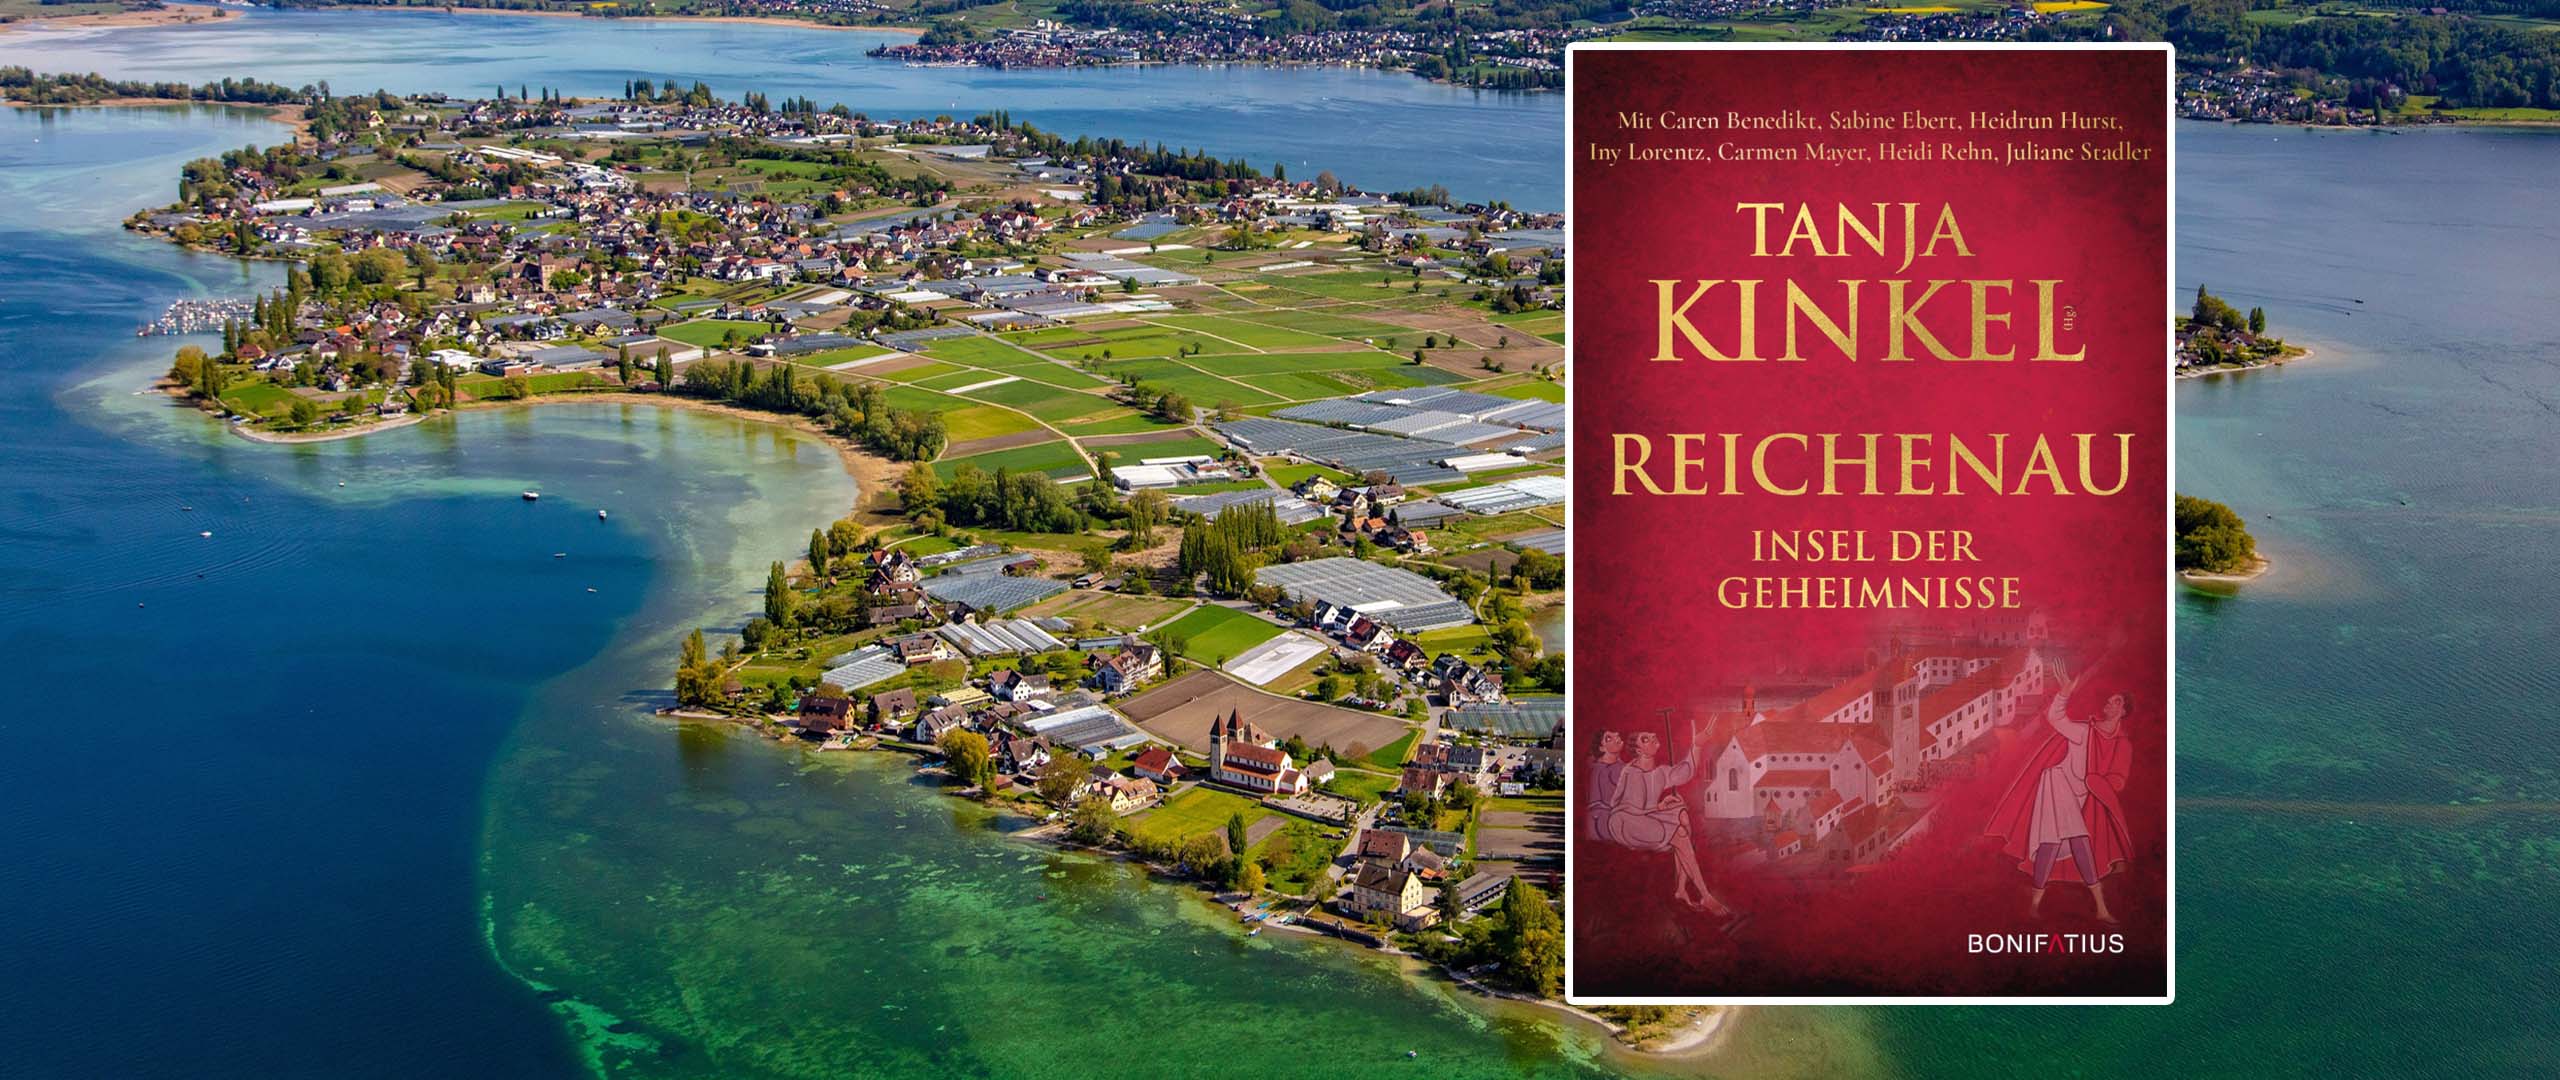 ›Reichenau – Insel der Geheimnisse‹: Neue Anthologie entführt an den Bodensee